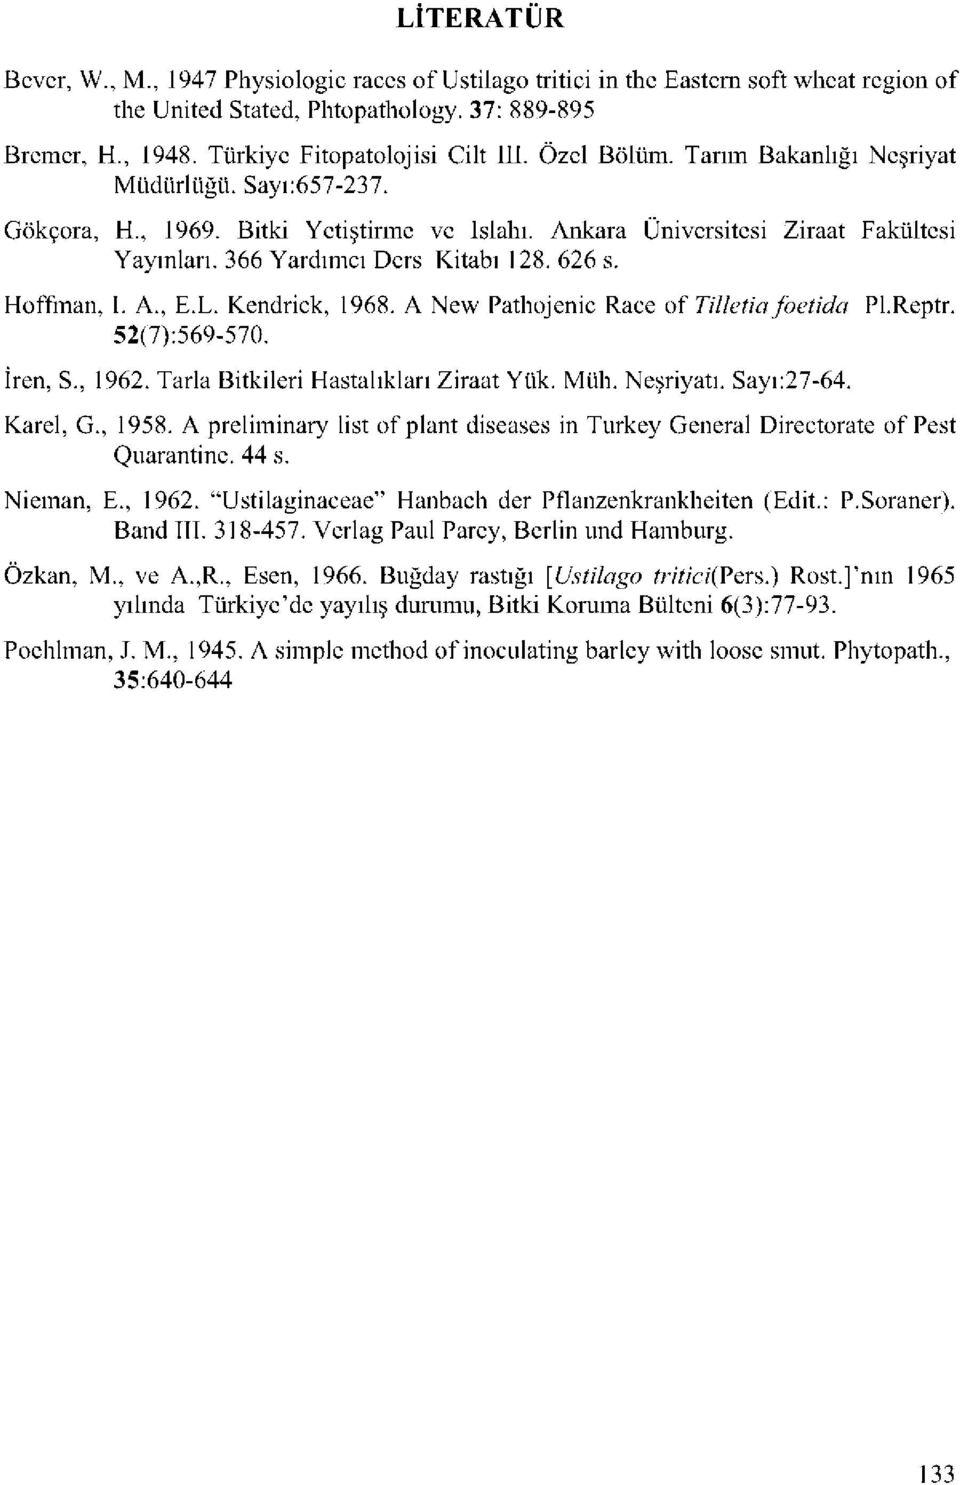 Hoffman, I. A., E.L. Kendrick, 1968. A New Pathojenic Race of Tilletia foetida 52(7):569-570. İren, S., 1962. Tarla Bitkileri ları Ziraat Yük. Müh. Neşriyatı. Sayı:27-64. Pl.Reptr. Karel, G., 1958.